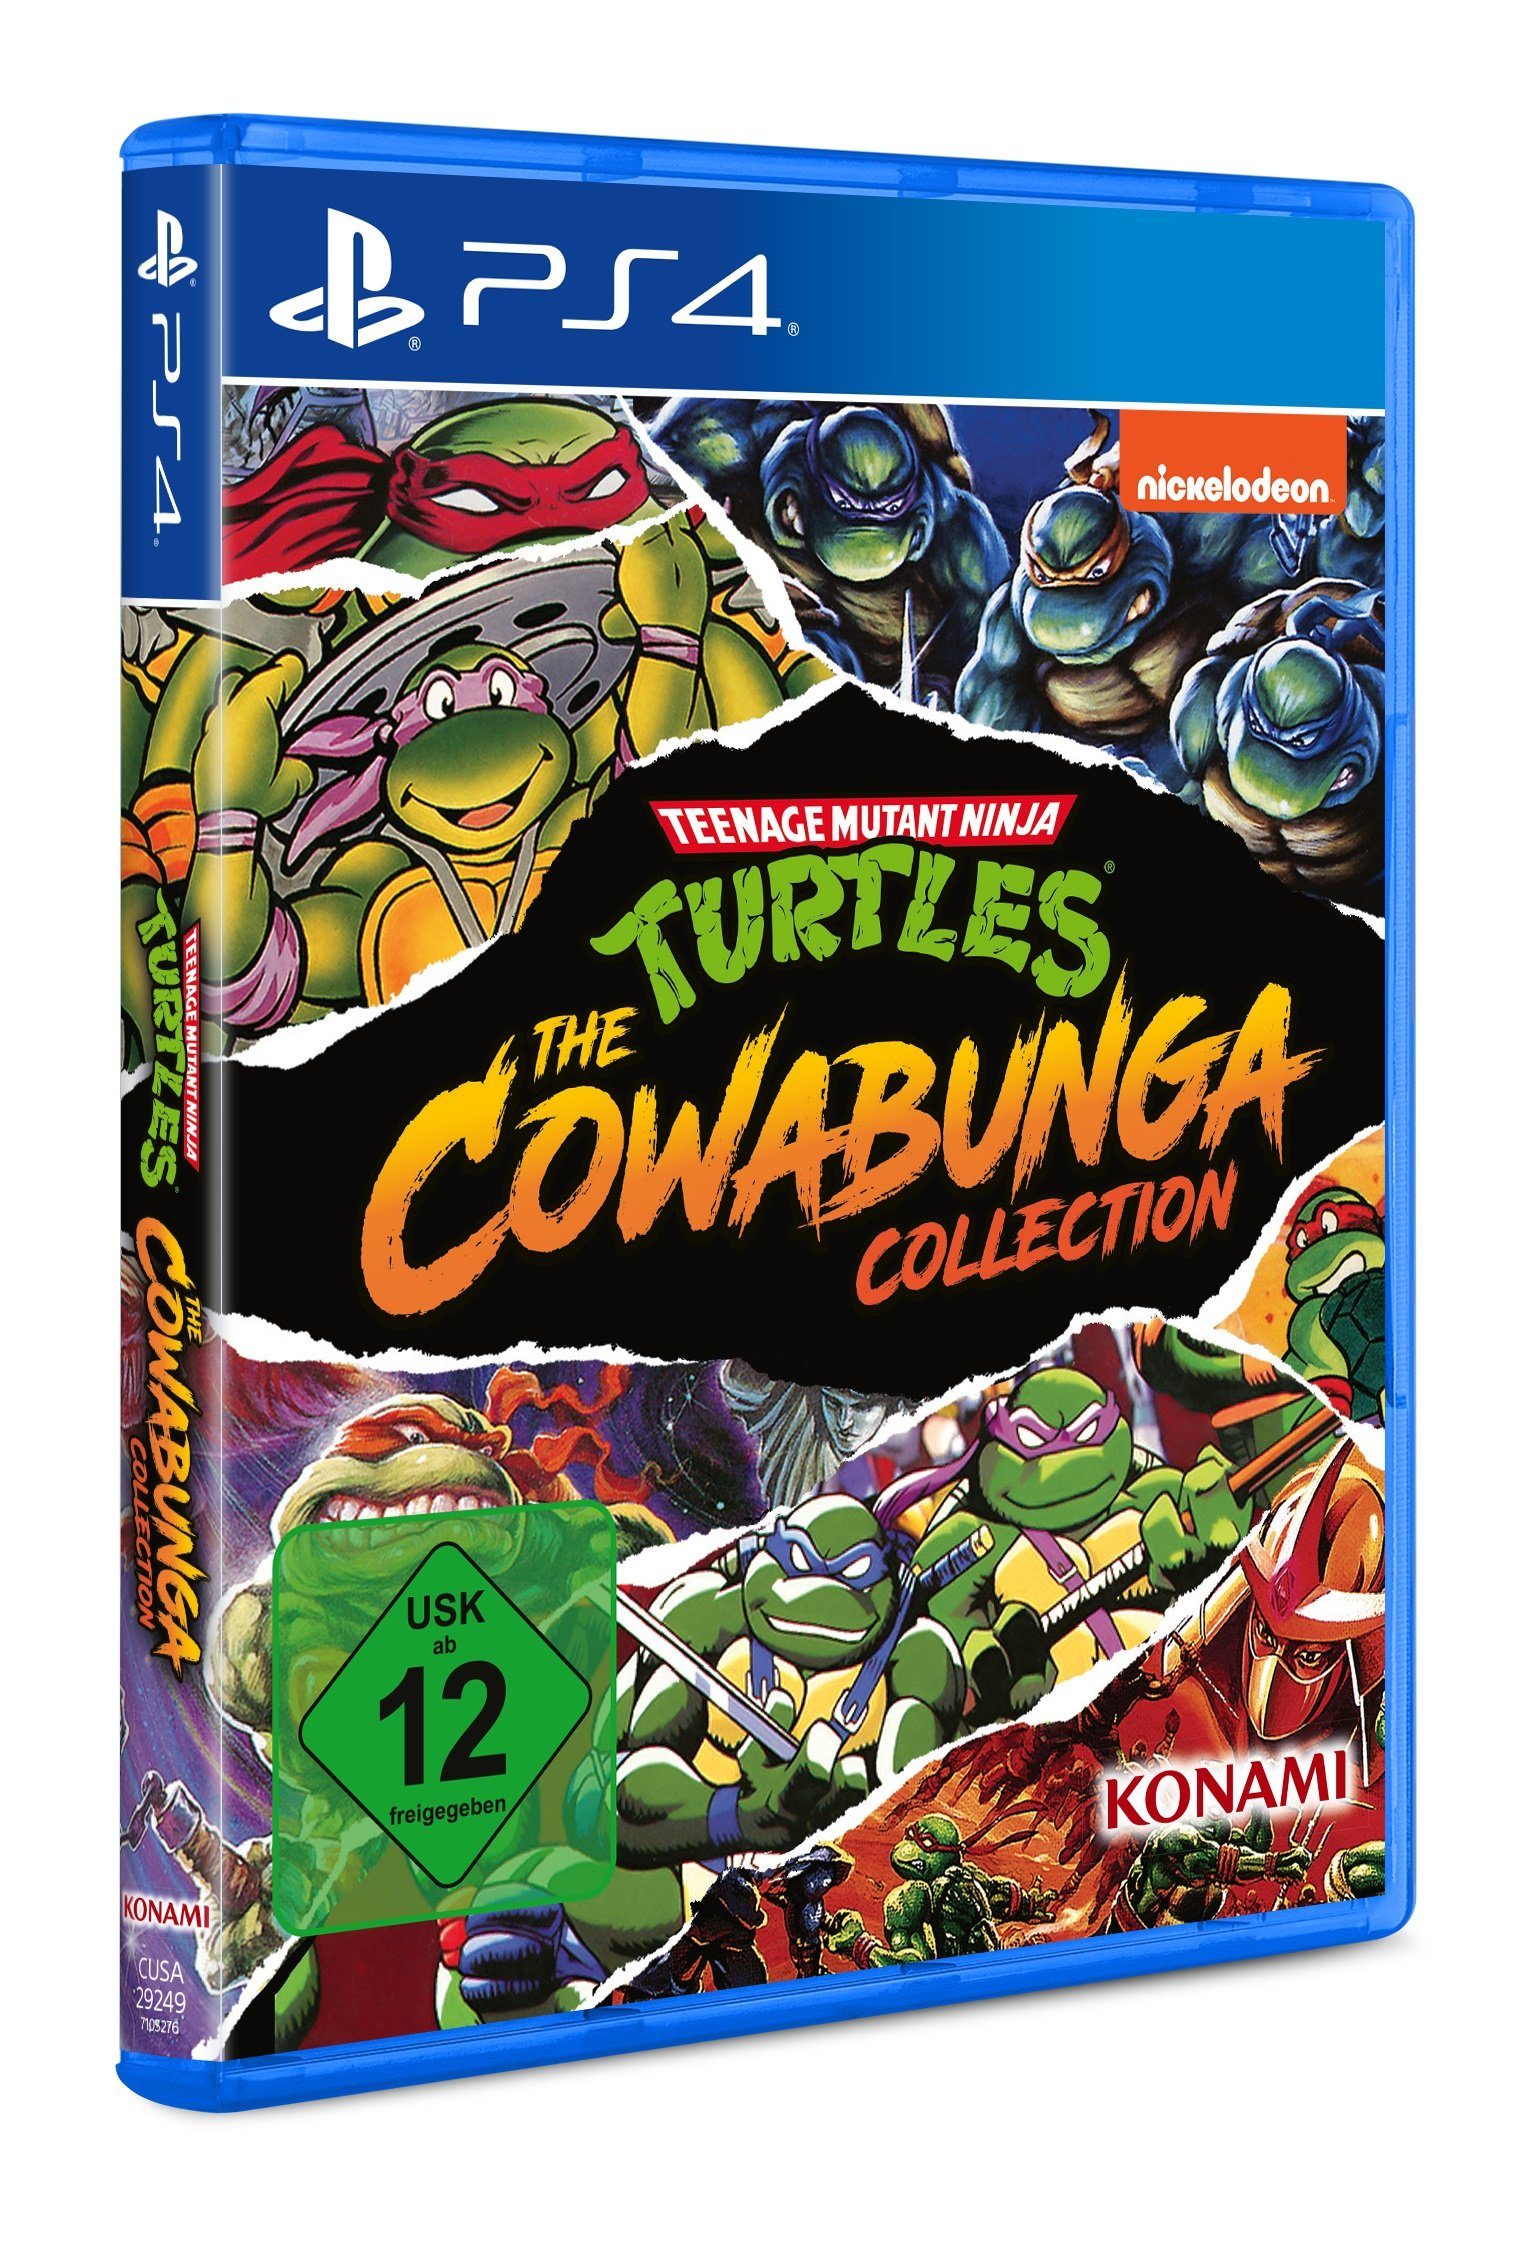 The Turtles Collection Mutant Ninja 4 Konami Teenage - PlayStation Cowabunga